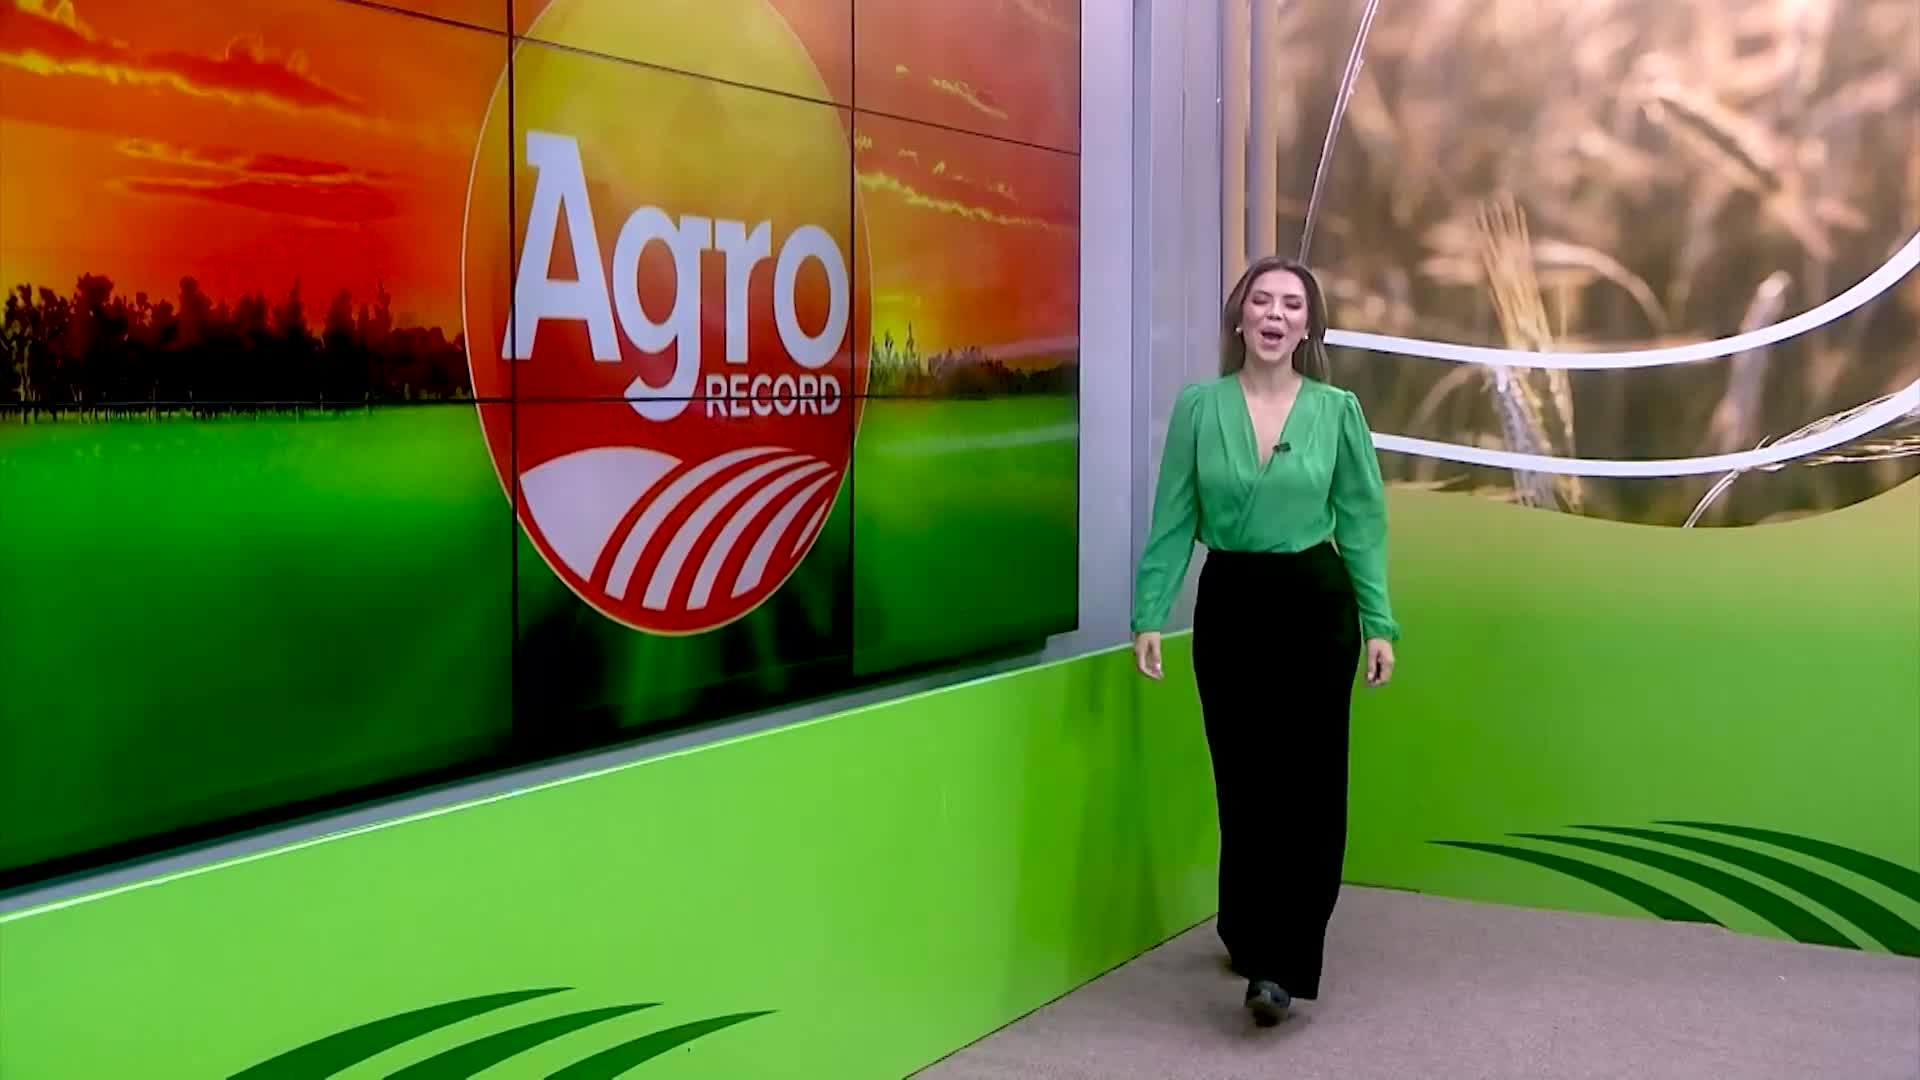 Vídeo: Veja a íntegra do Agro Record deste domingo (27)